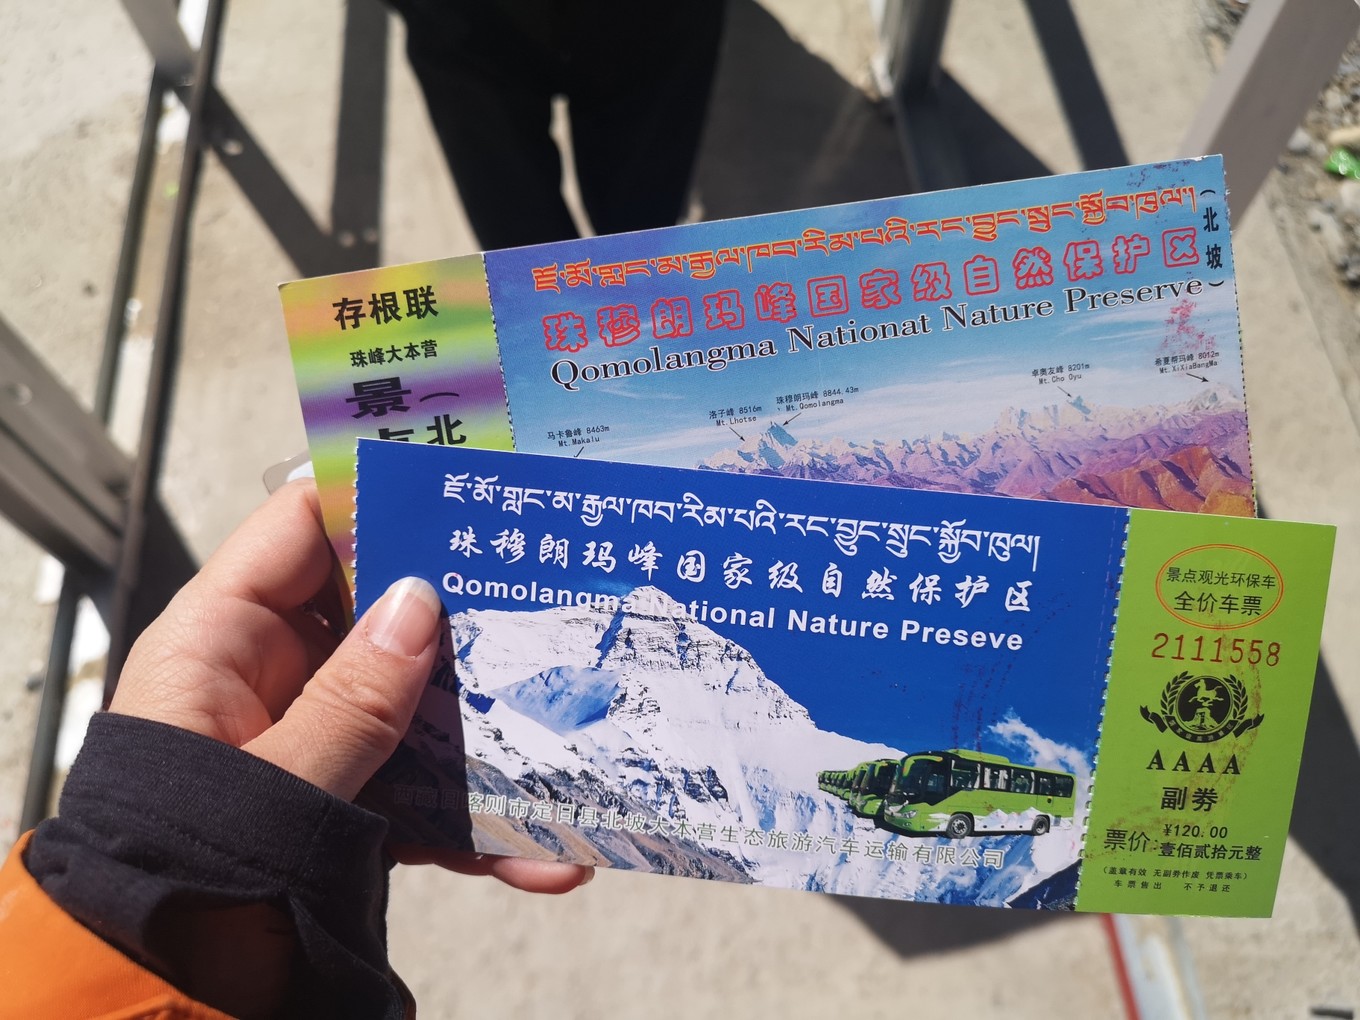 西藏珠峰大本营门票多少钱?怎样玩?是住上面的营地好还是下面?